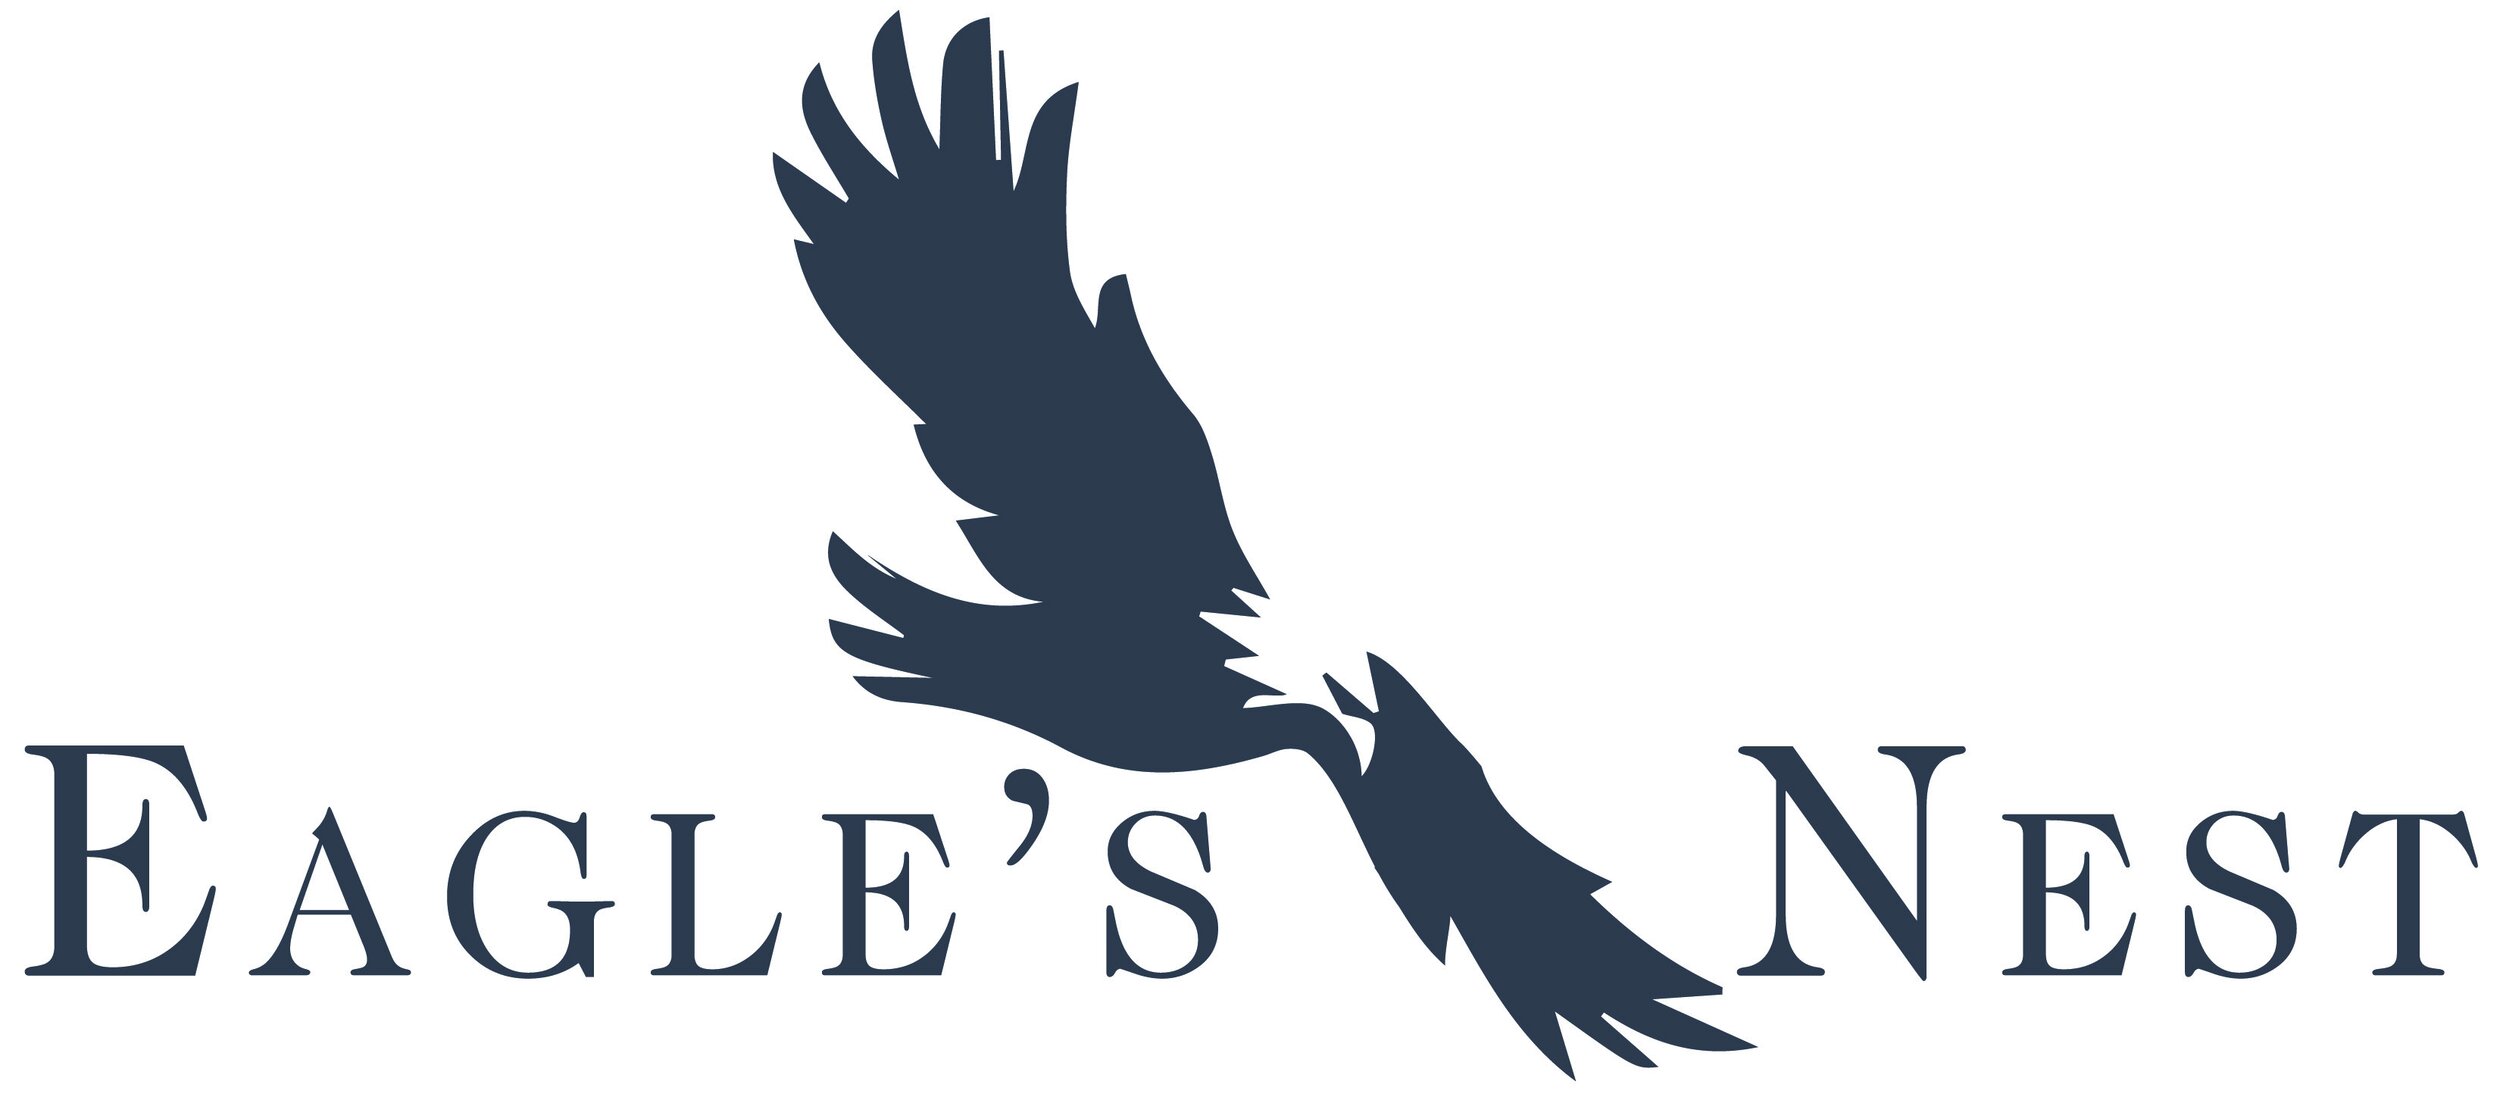 AVB Eagles Nest Logo FIN.jpg